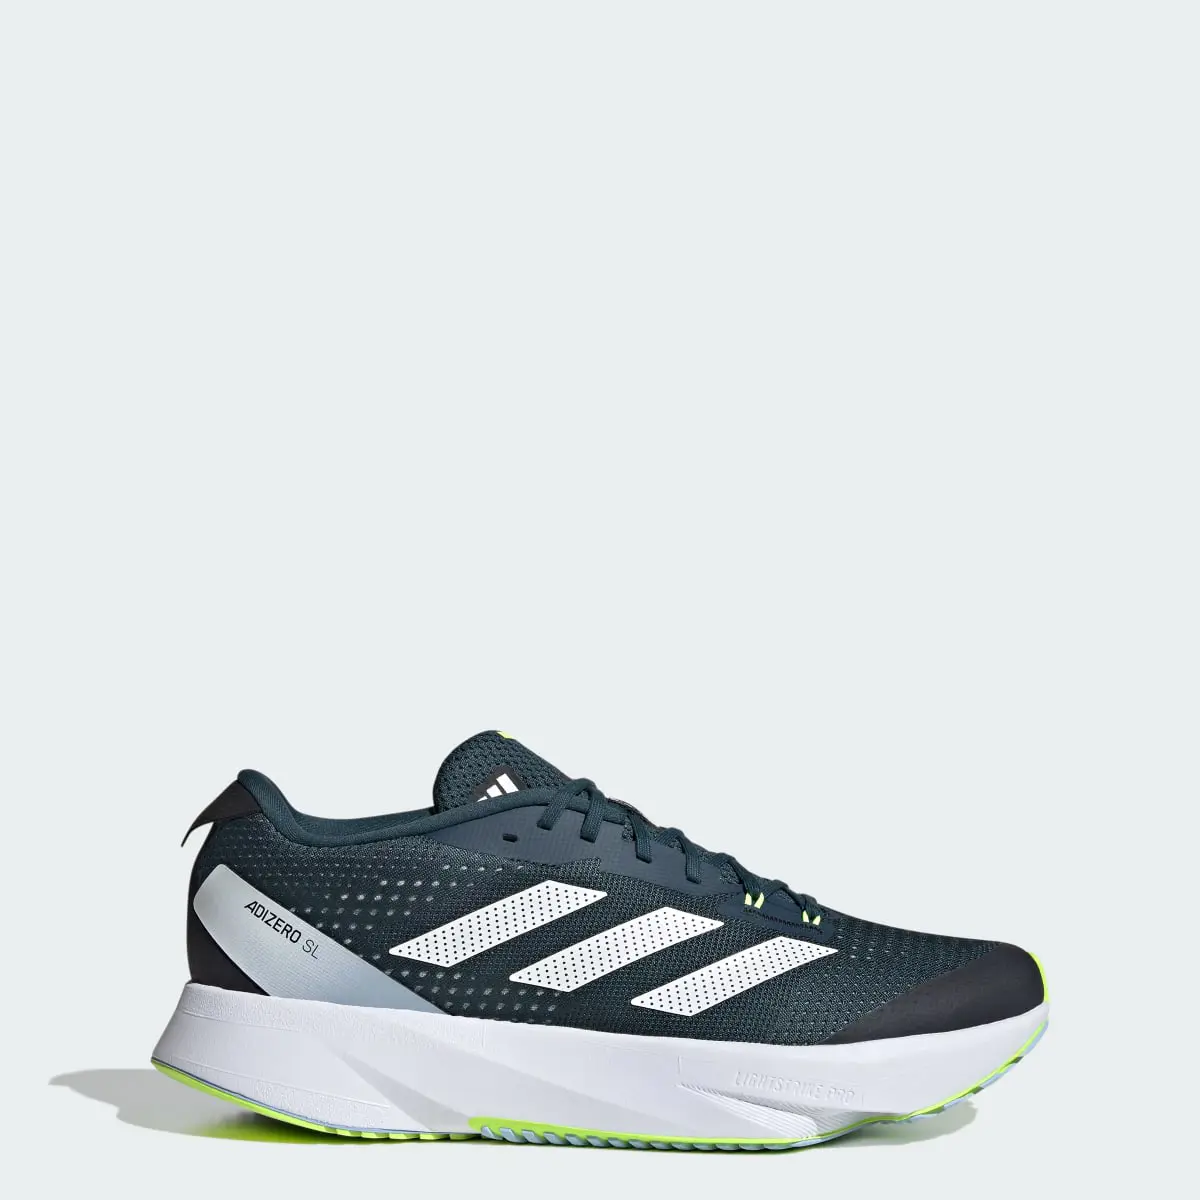 Adidas Adizero SL Running Shoes. 1